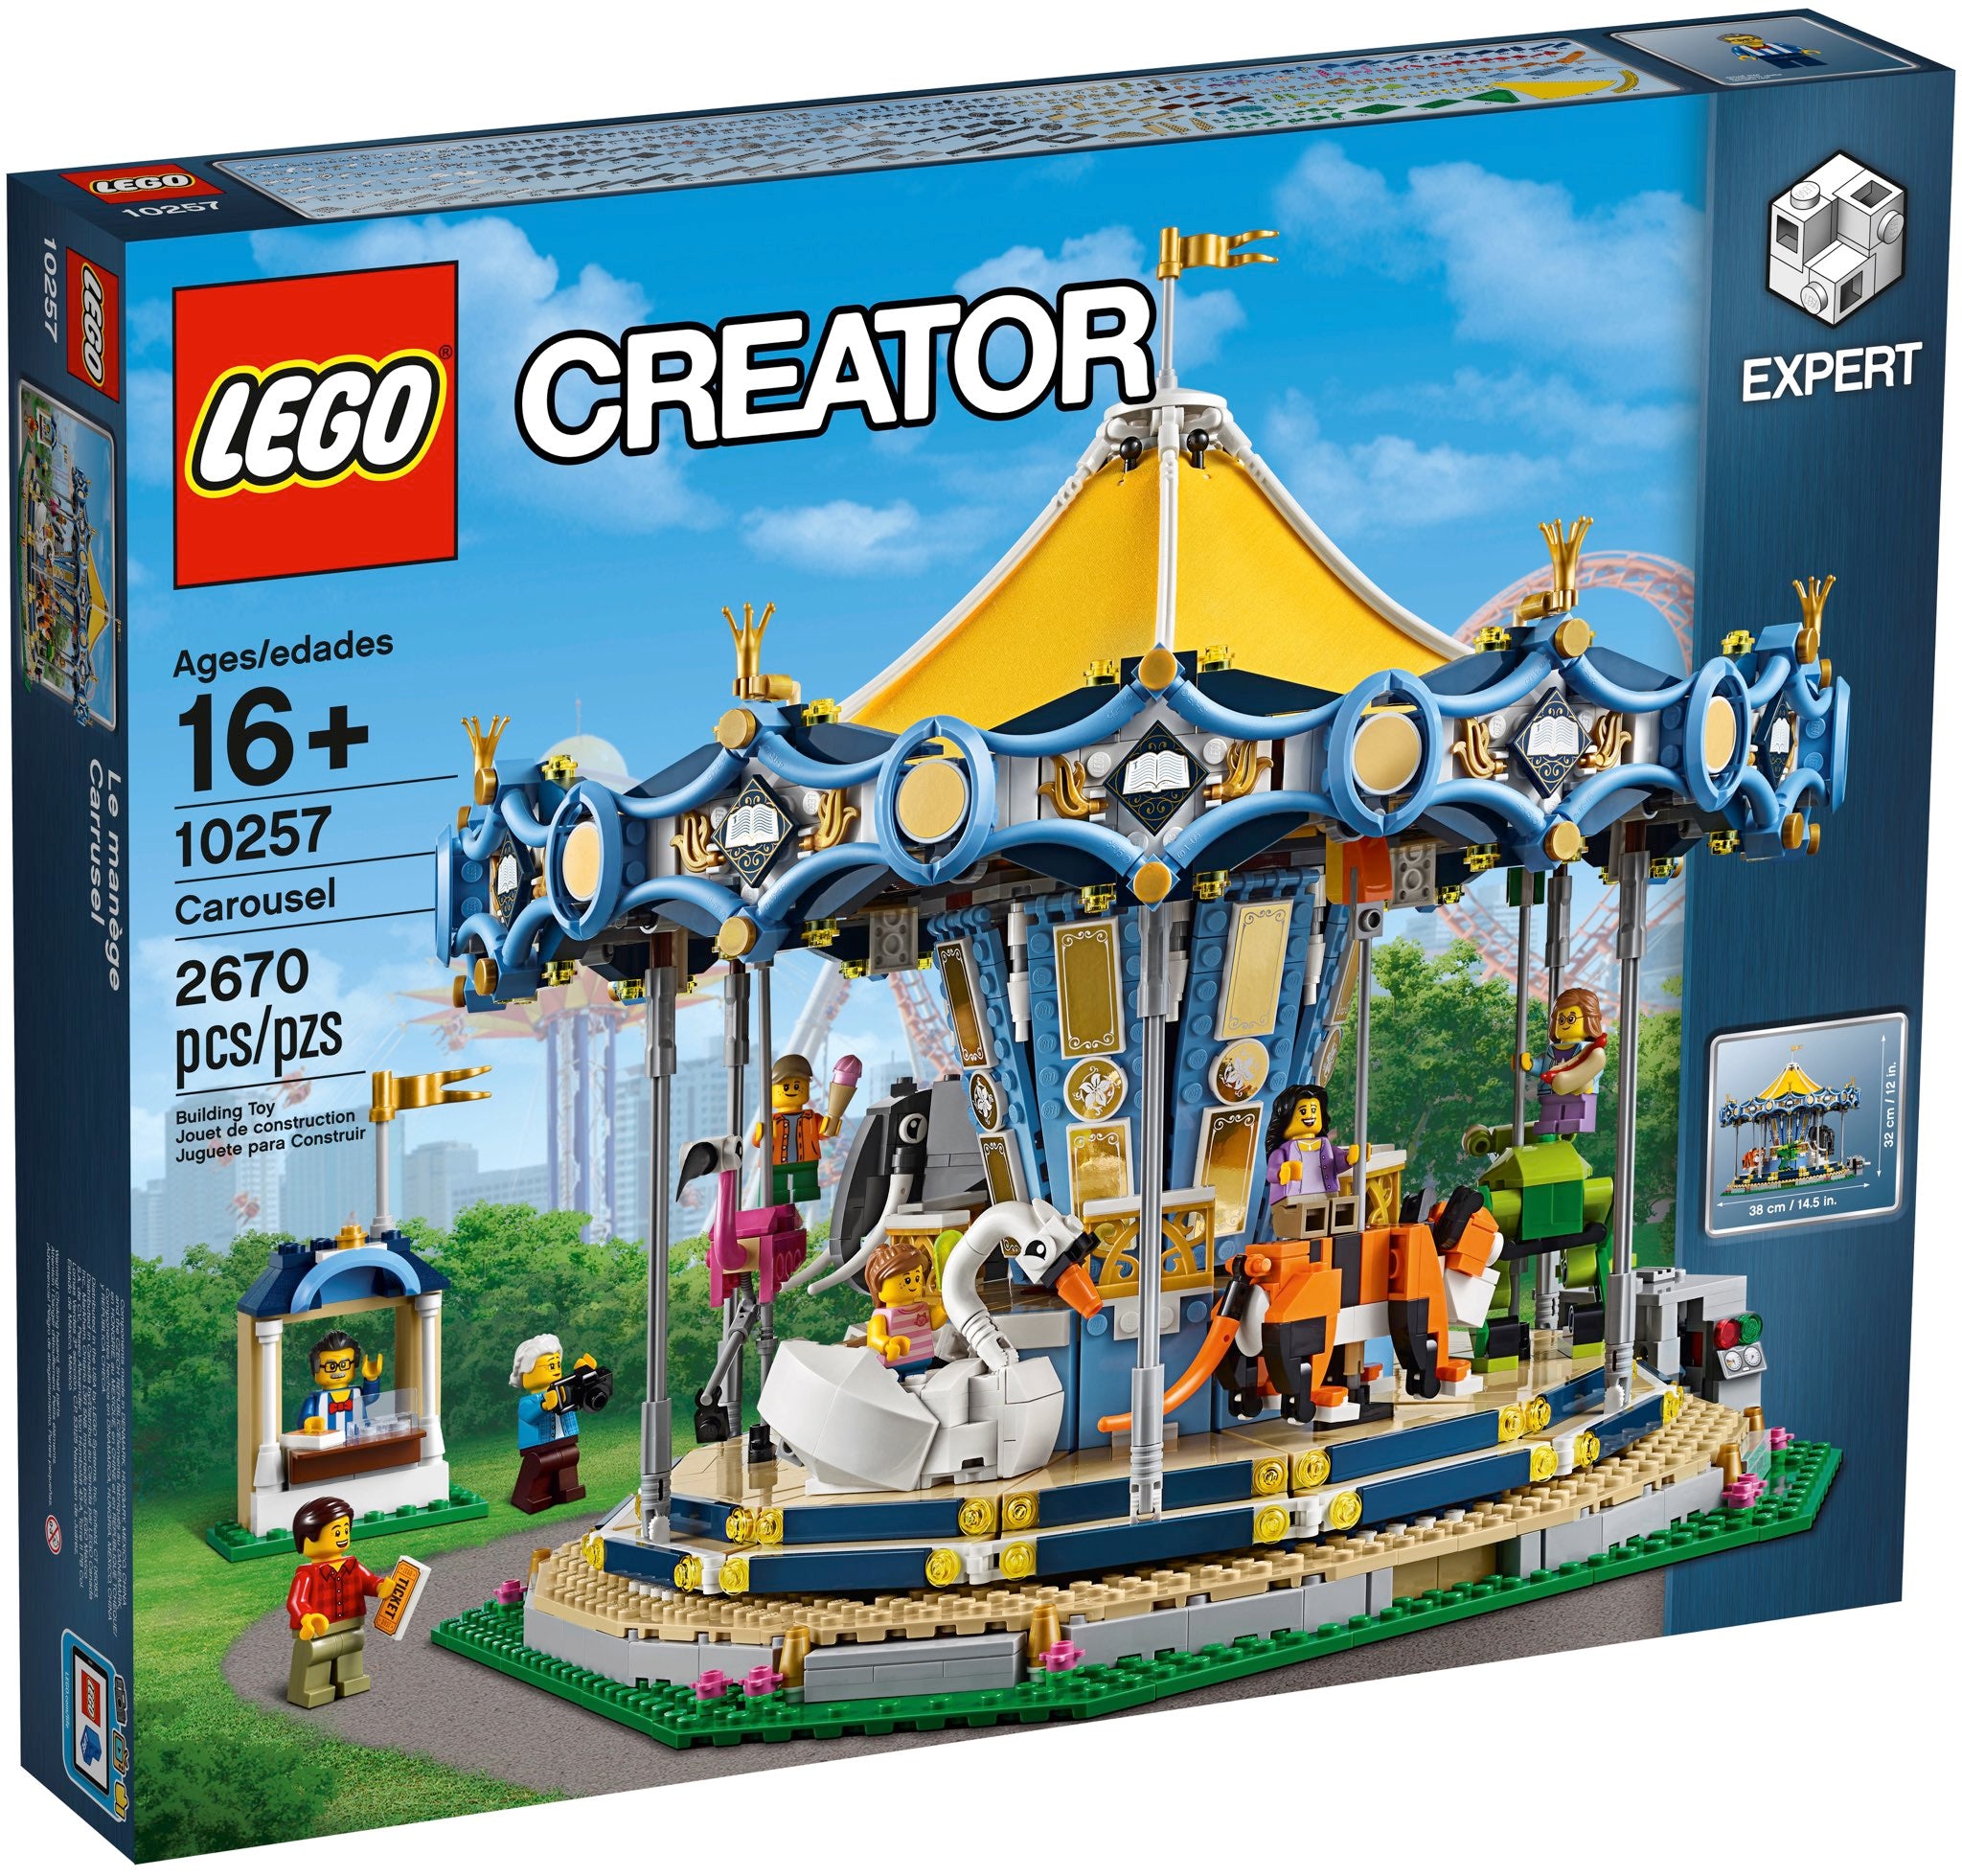 LEGO Creator Expert Karussell (10257) - im GOLDSTIEN.SHOP verfügbar mit Gratisversand ab Schweizer Lager! (5702015865289)